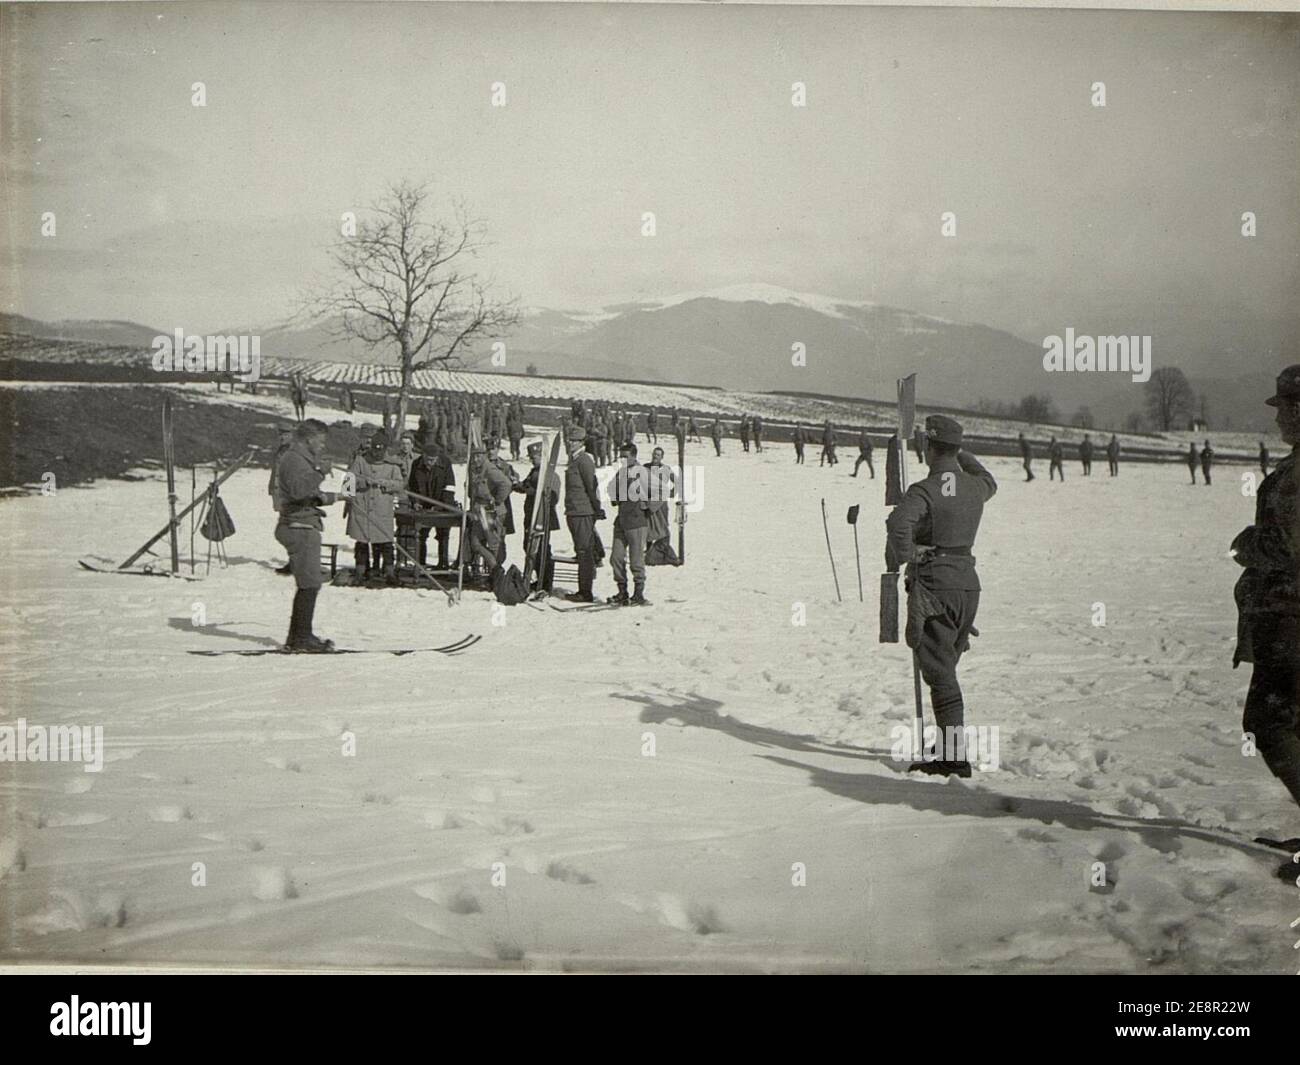 Militär Skilaufen in Villach. Offizierslaufen Ziel. Stock Photo